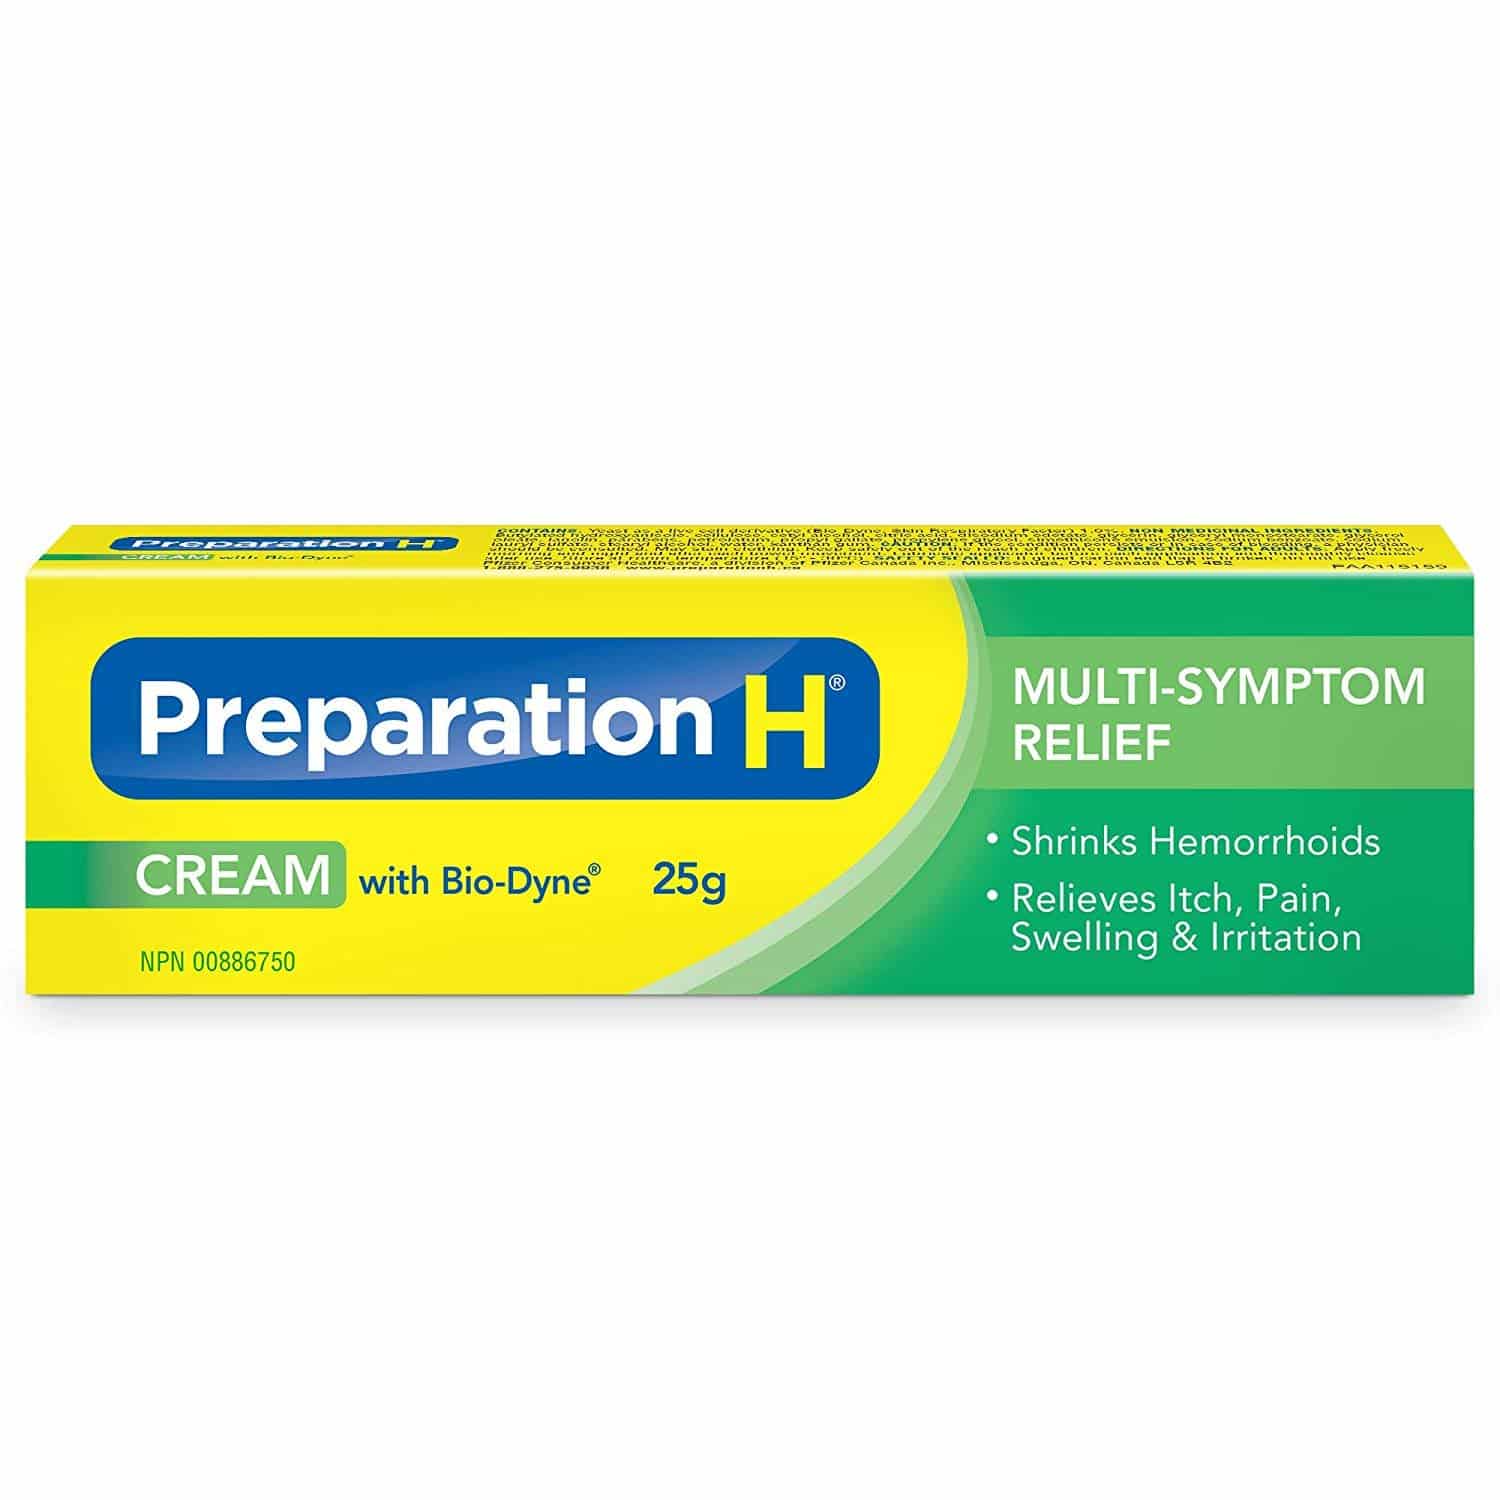 Will Preparation H Shrink Hemorrhoids